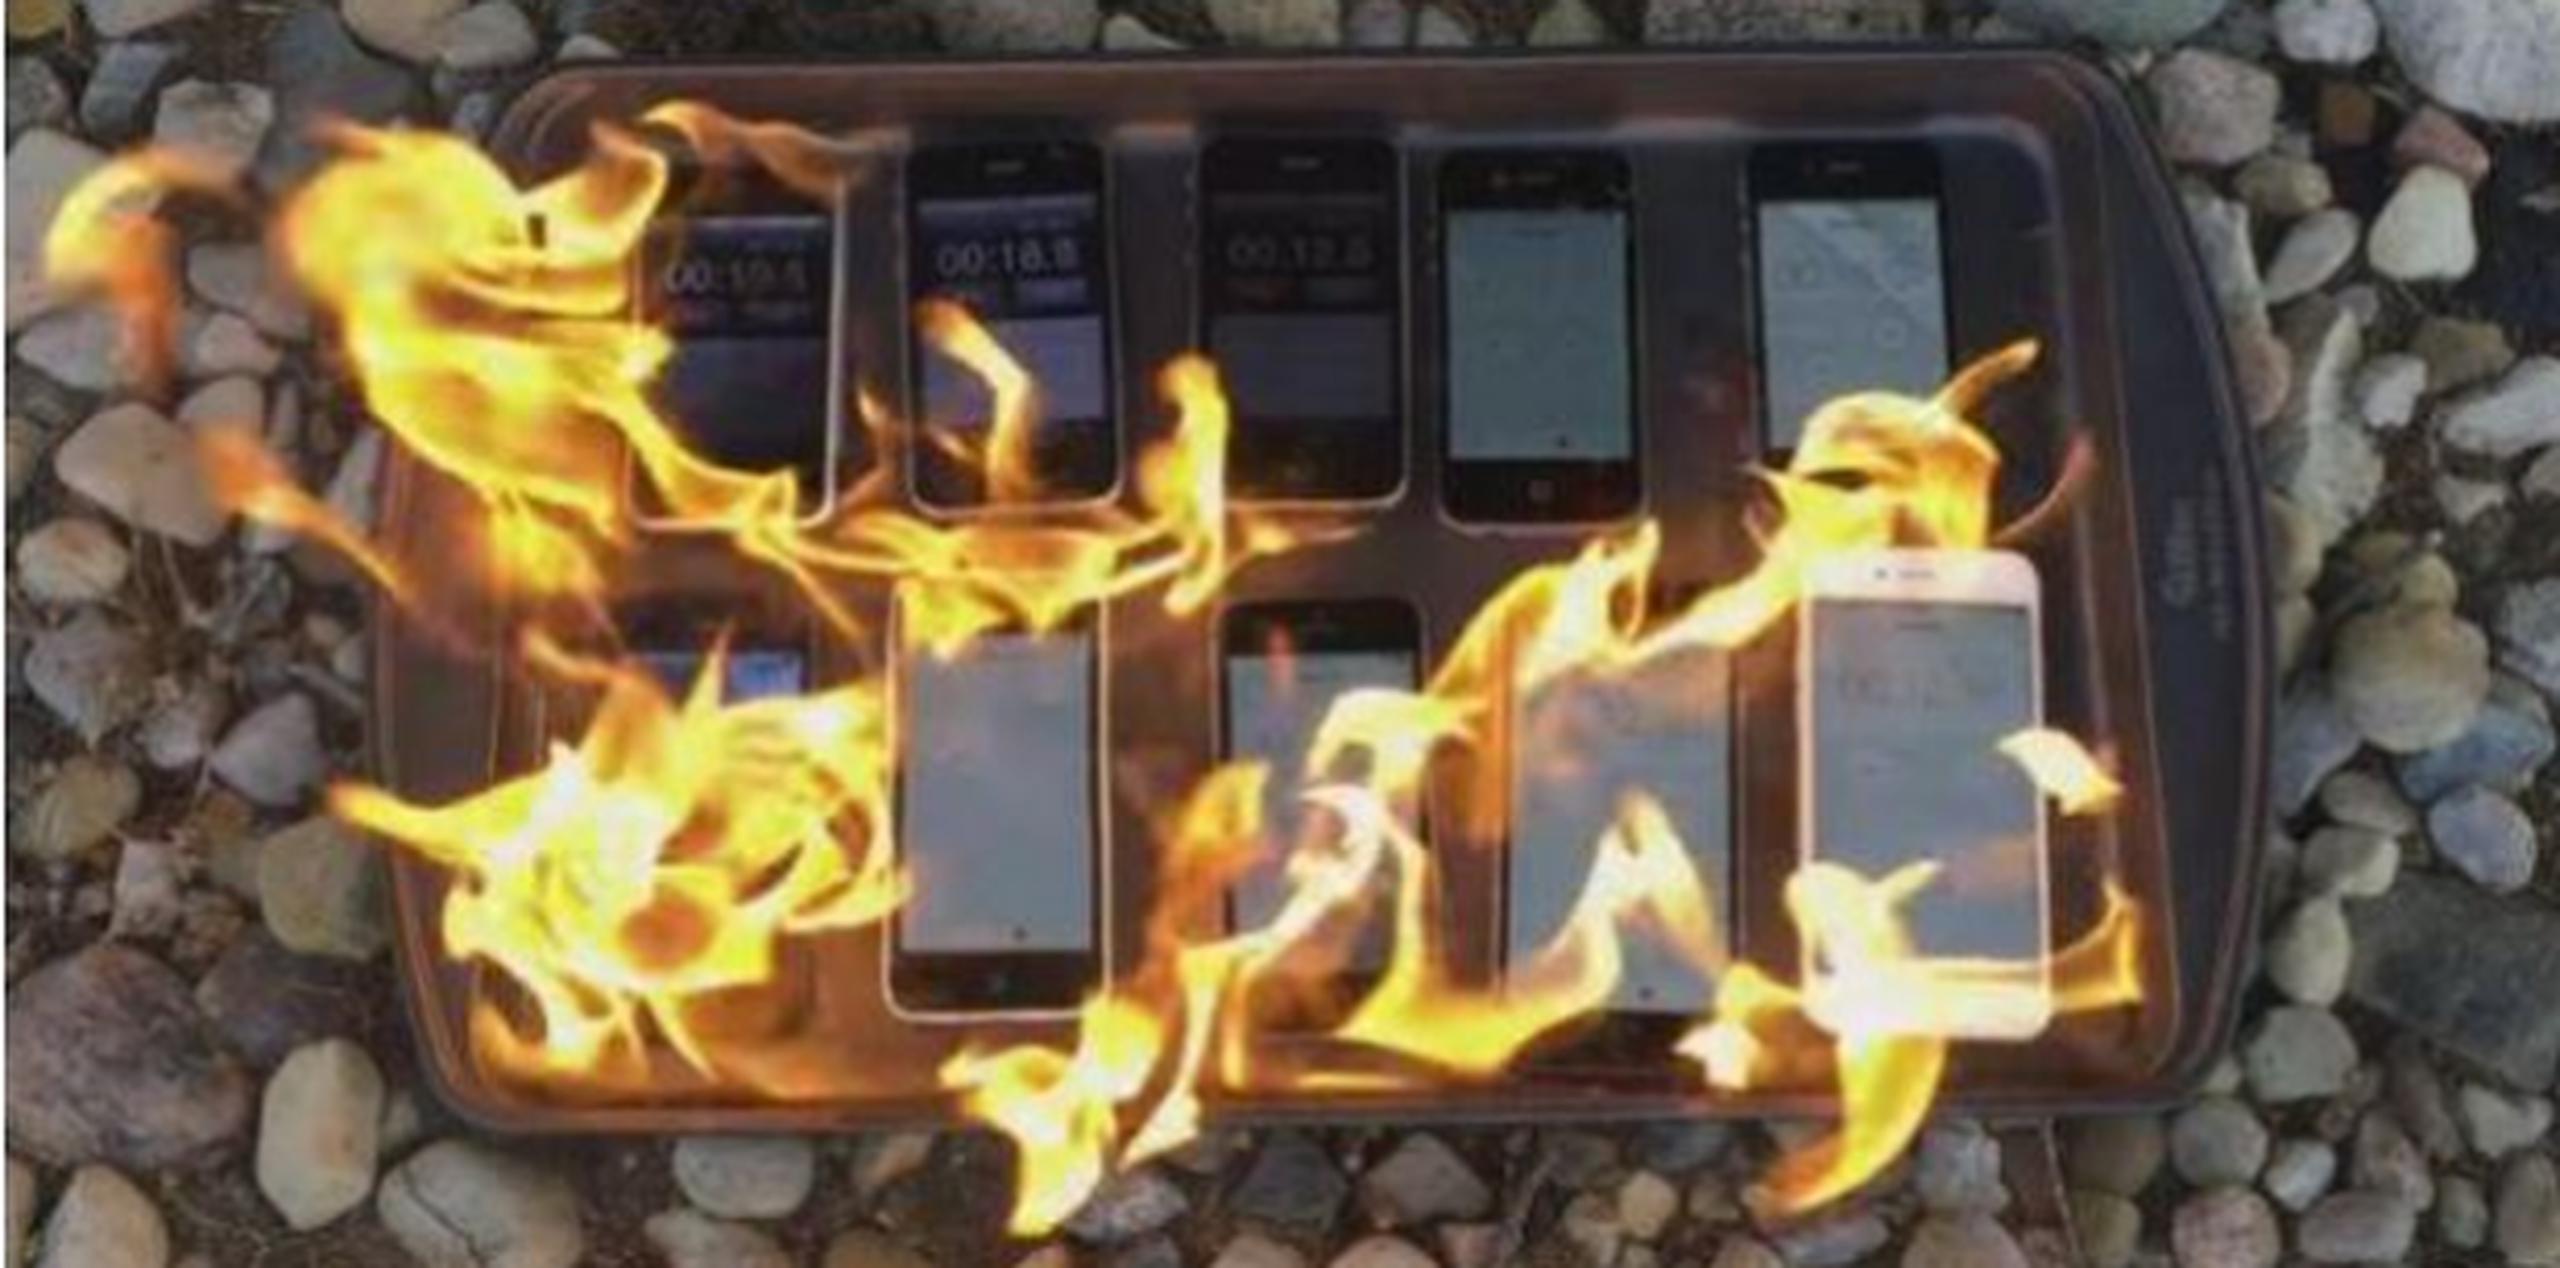 En el clip  se ve que a medida que el fuego envuelve a los teléfonos inteligentes, estos se van tornando negros. (YouTube)